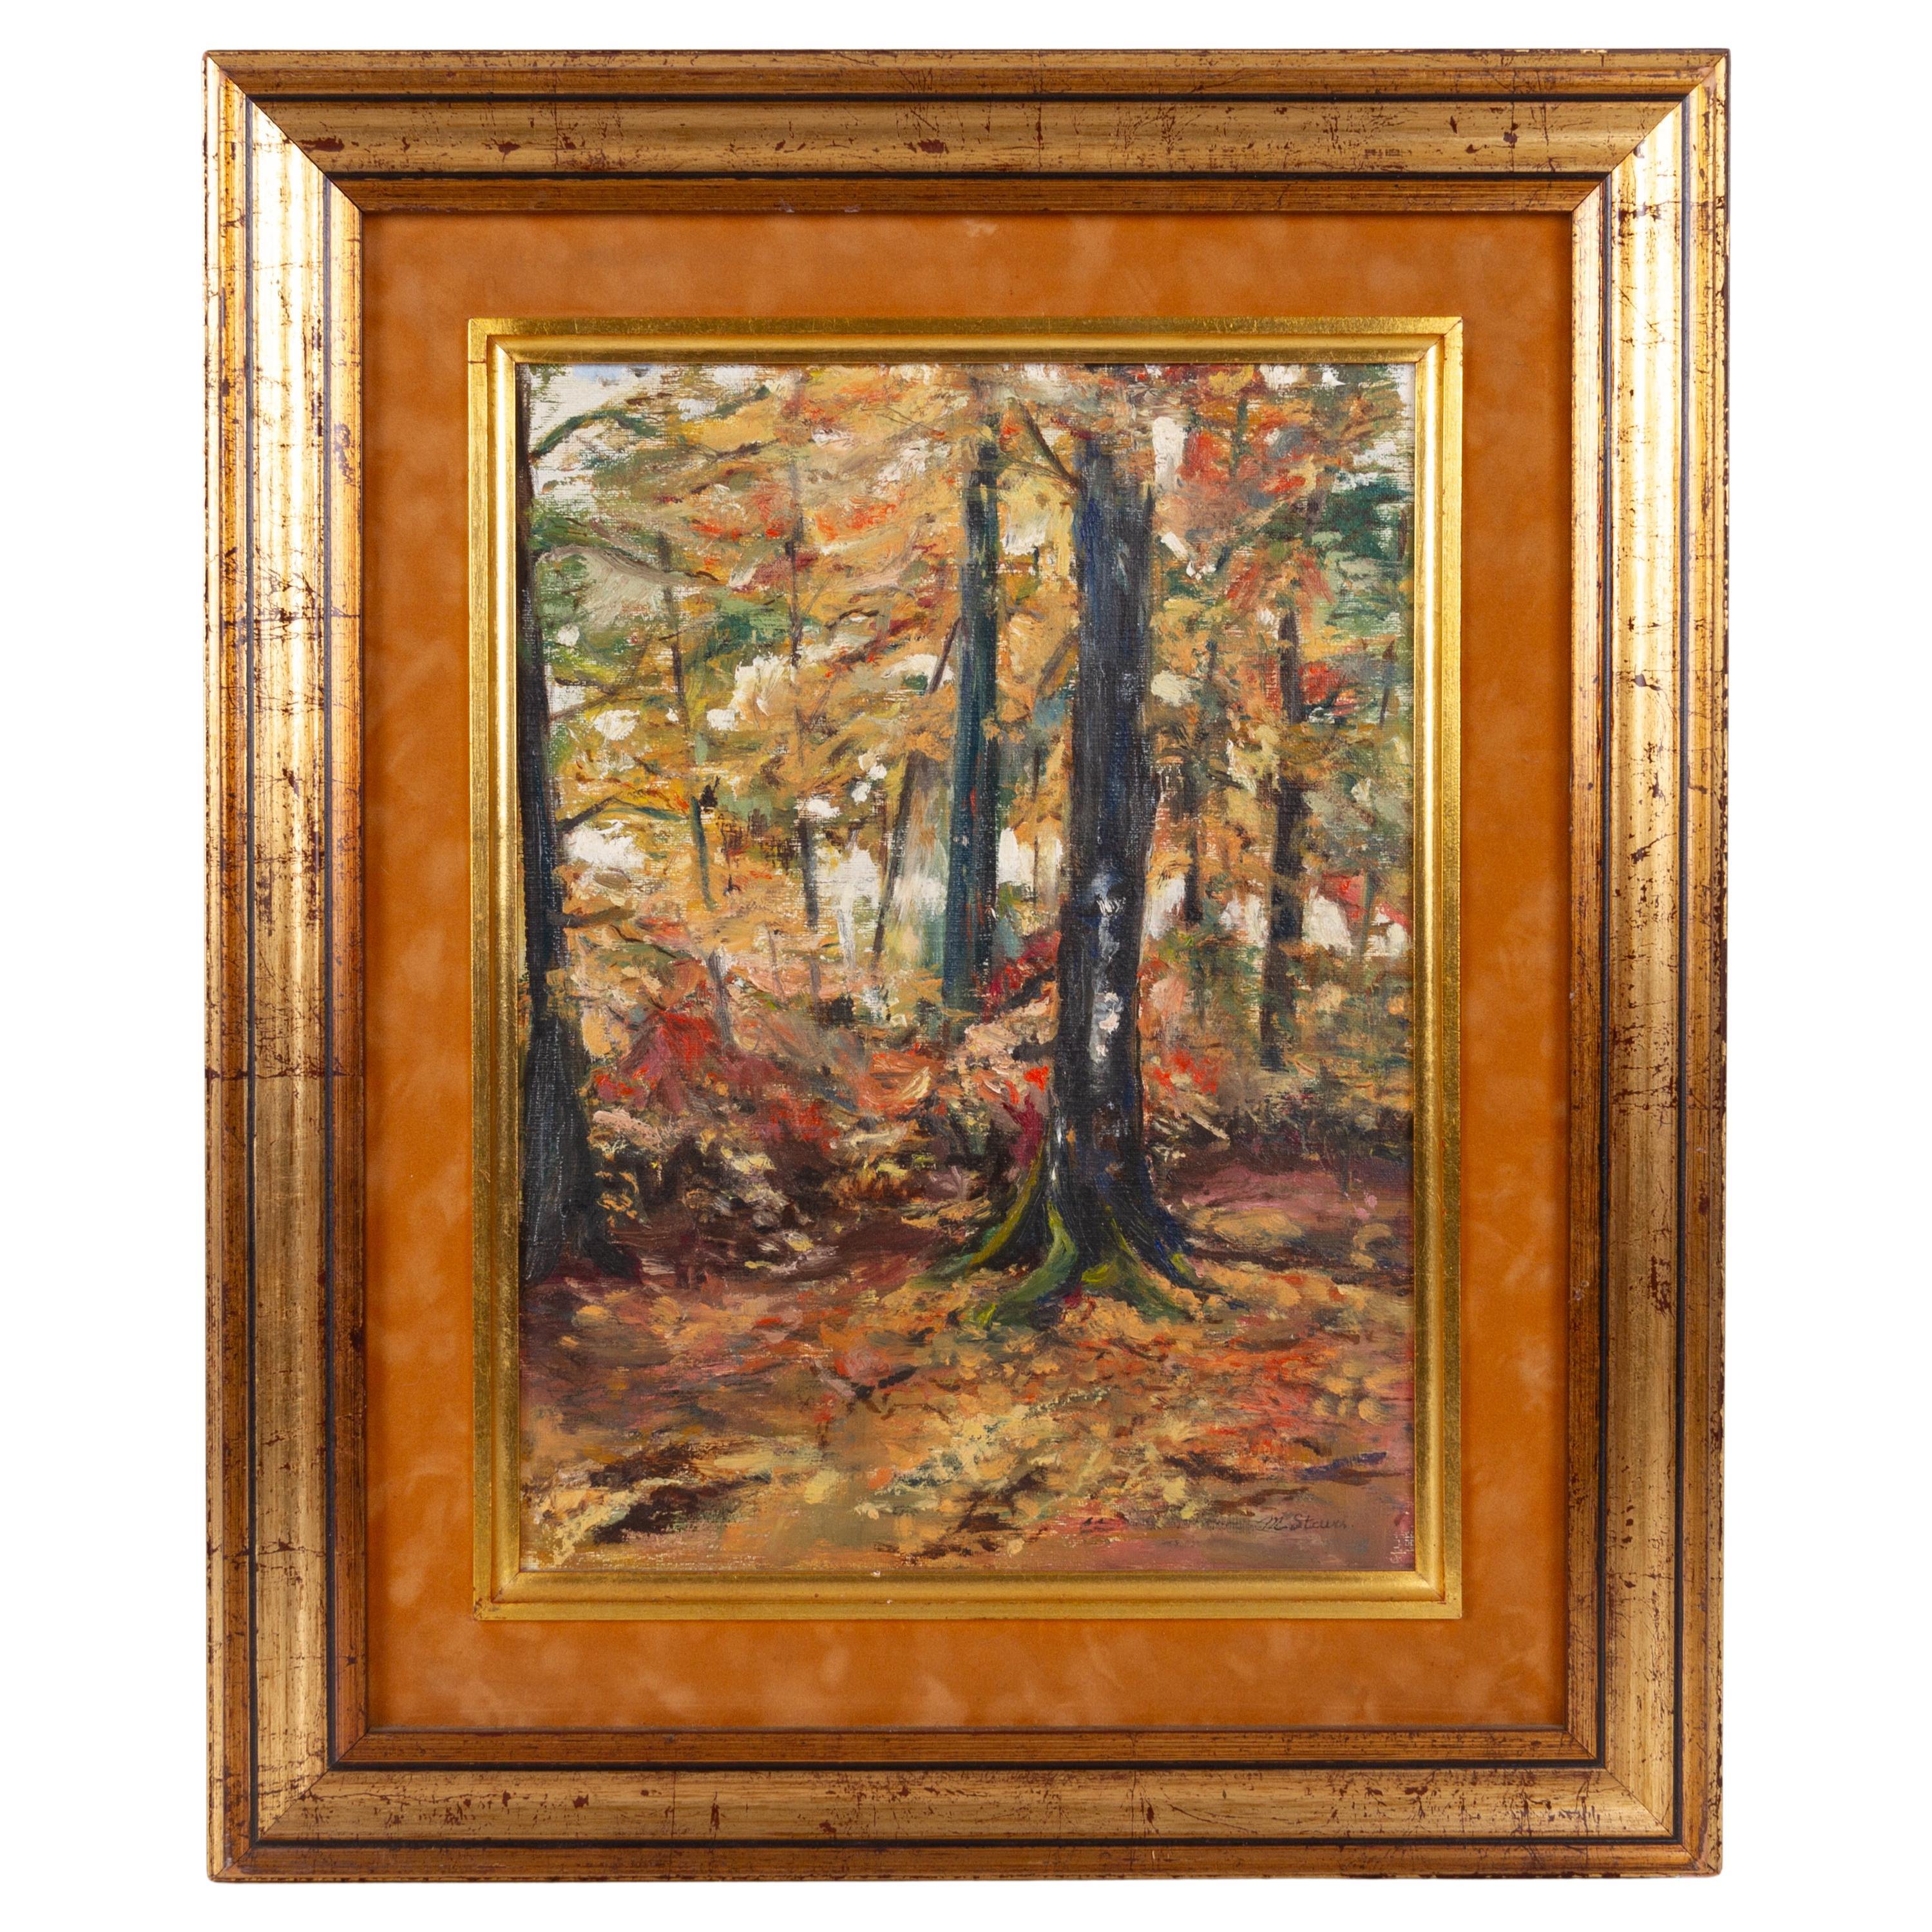 Peinture à l'huile belge de paysage forestier d'automne signée